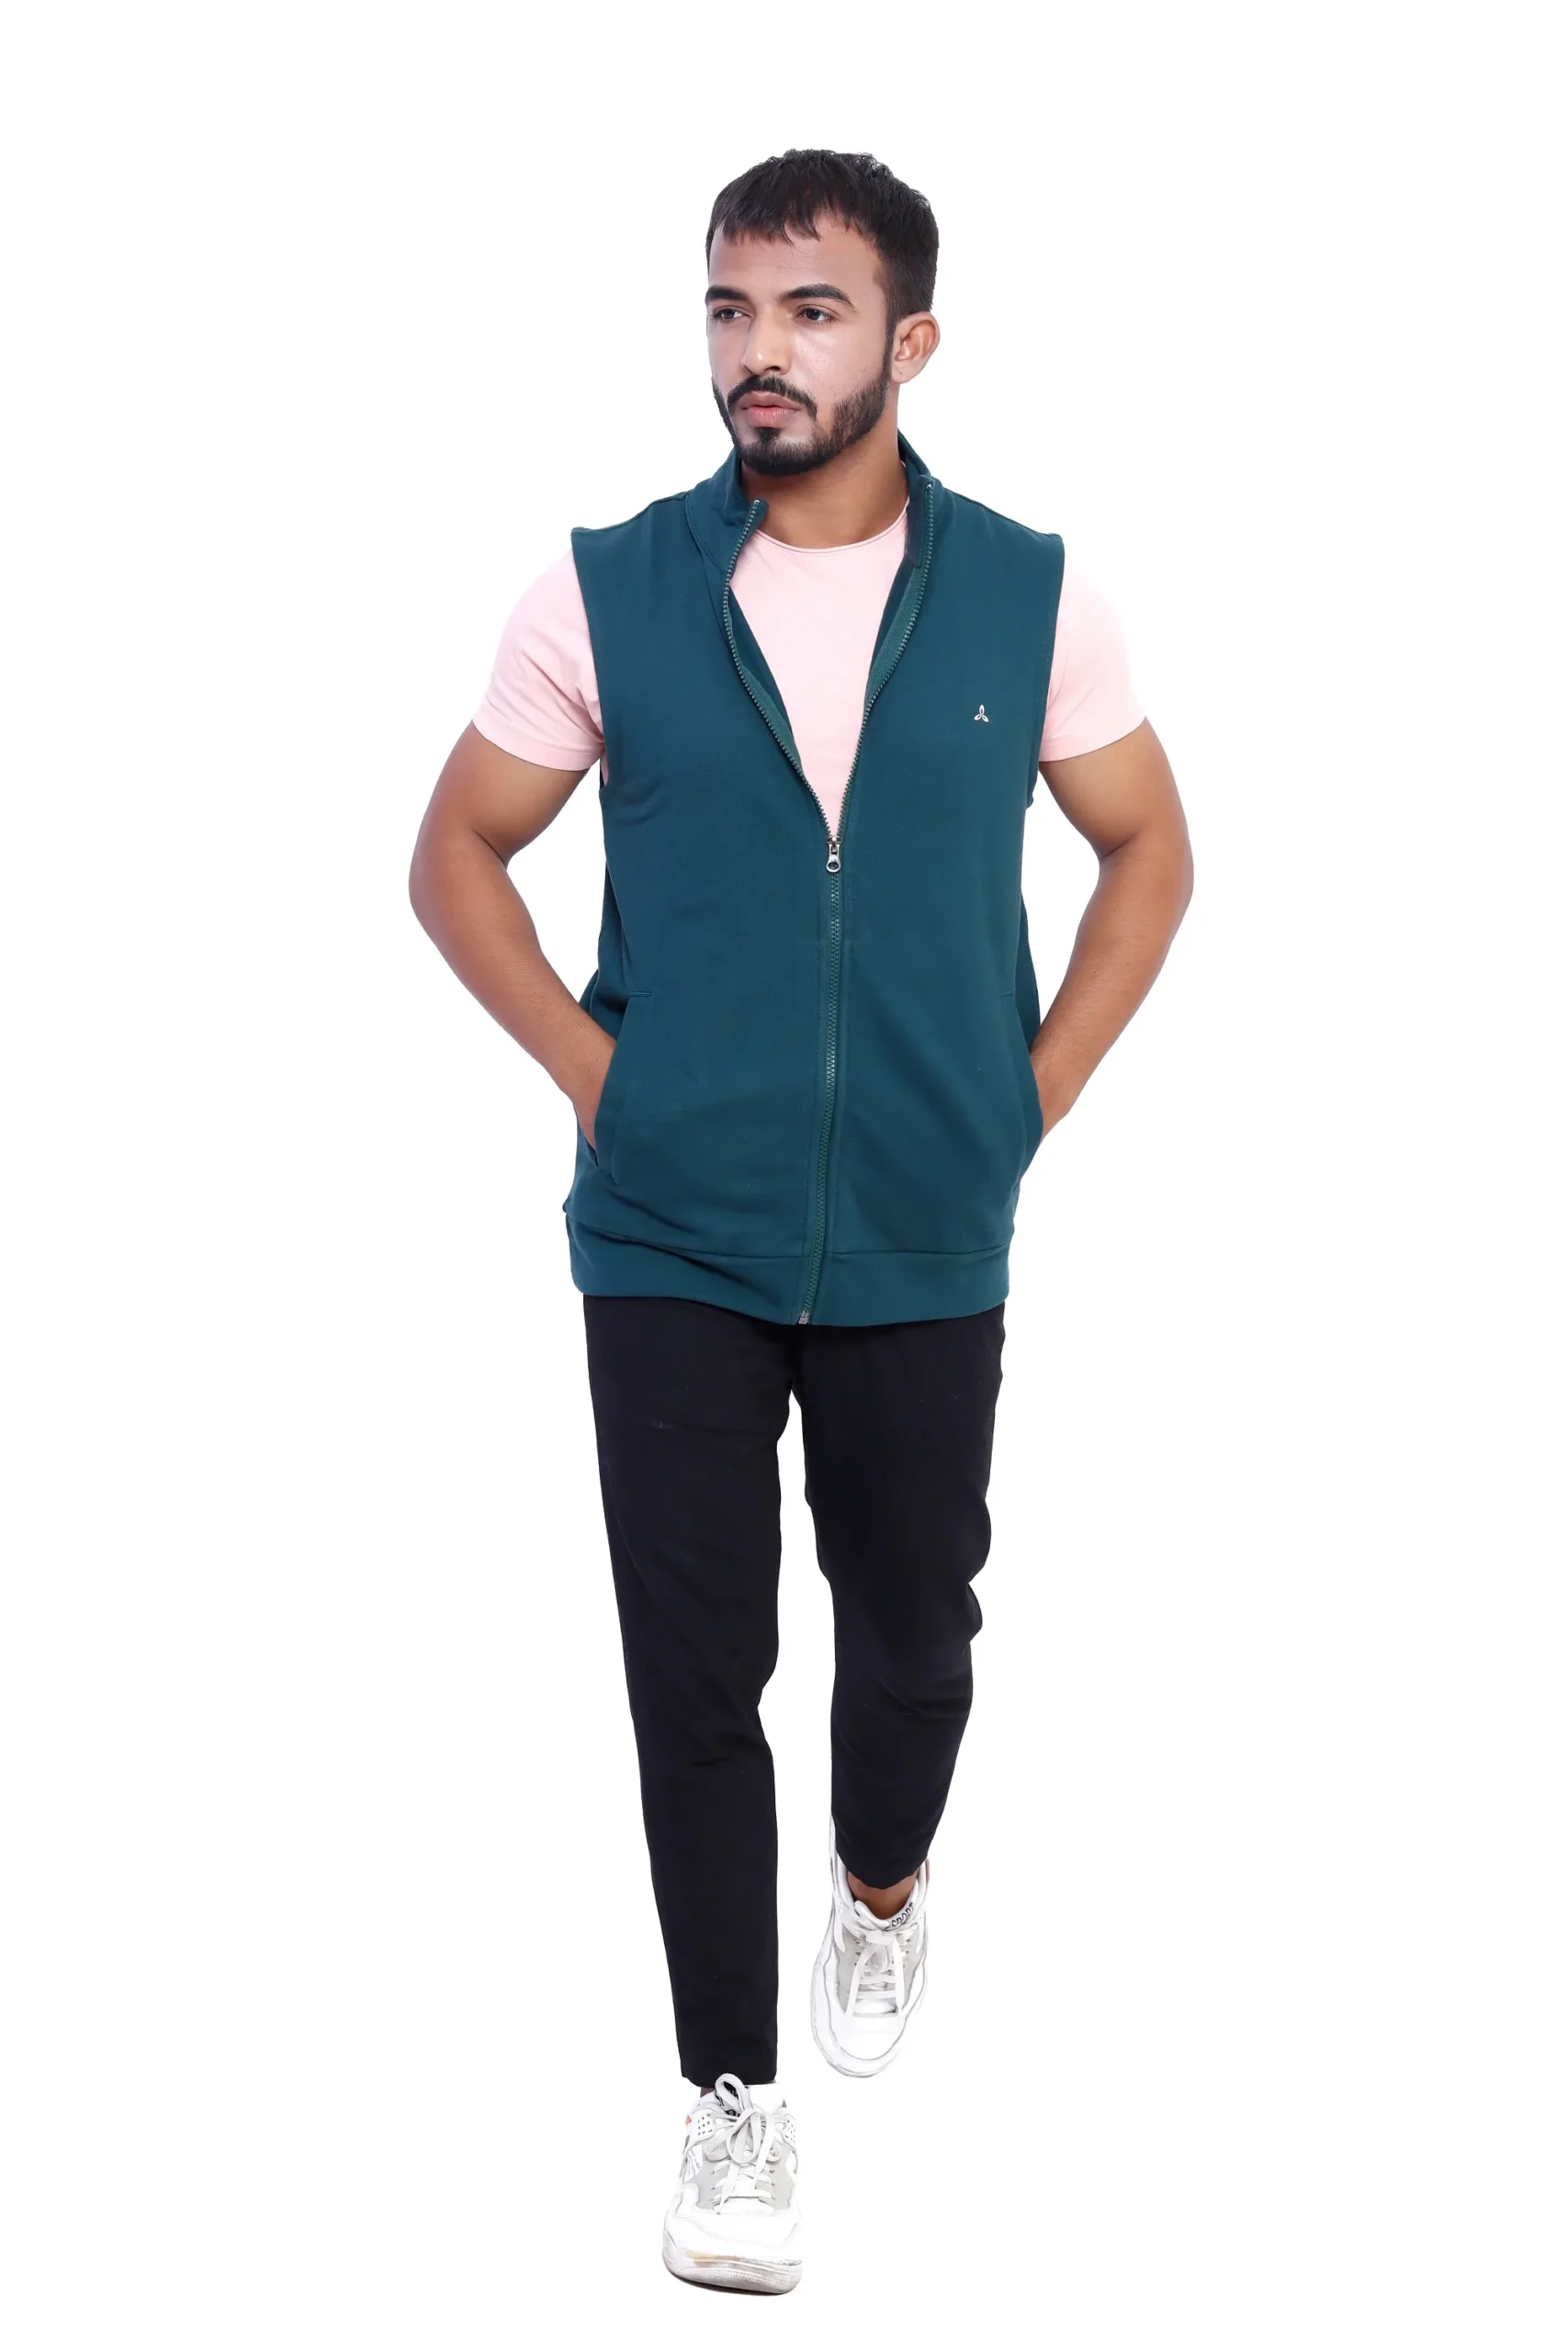 Men's sleeveless zipper jacket-10 best puffer jackets for men .-by live love laugh